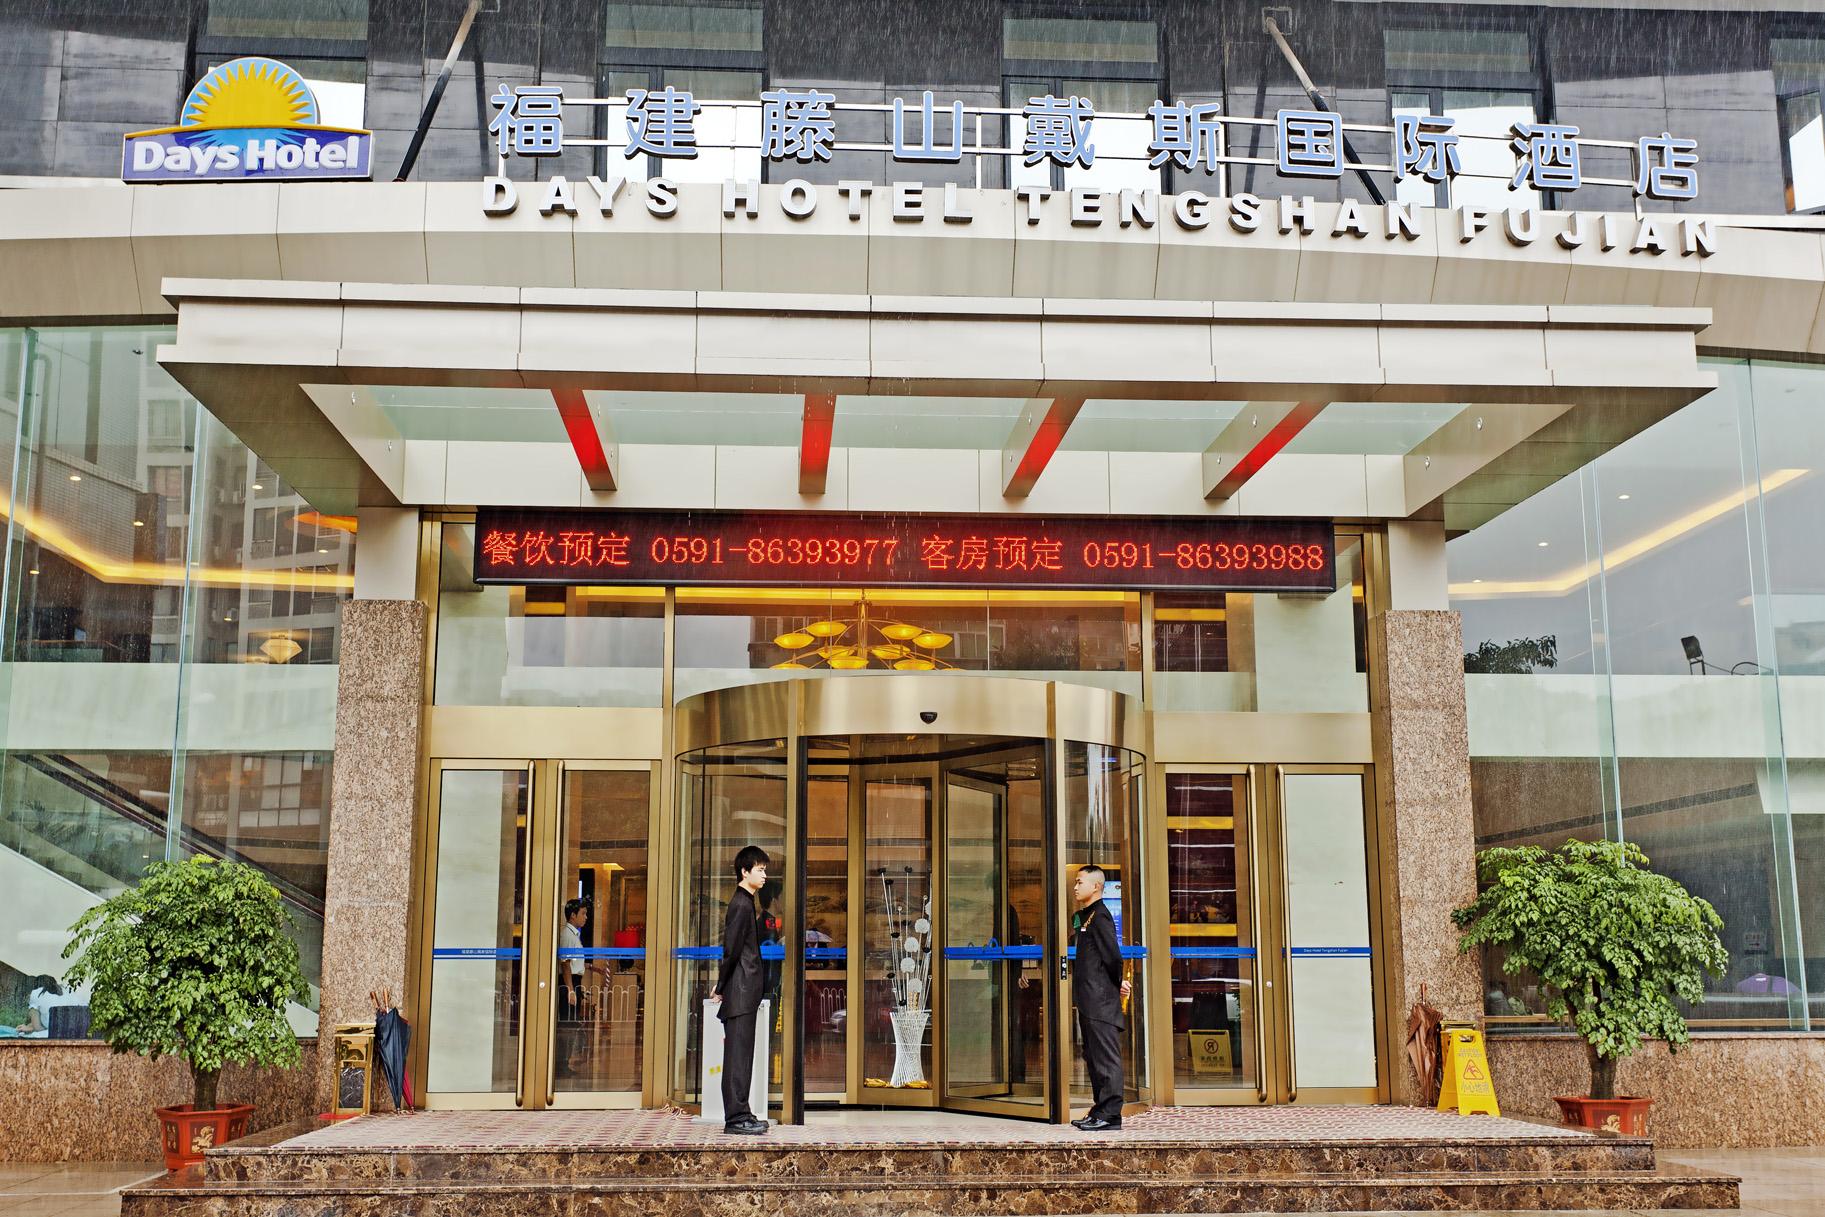 Days Hotel Tengshan - Fujian